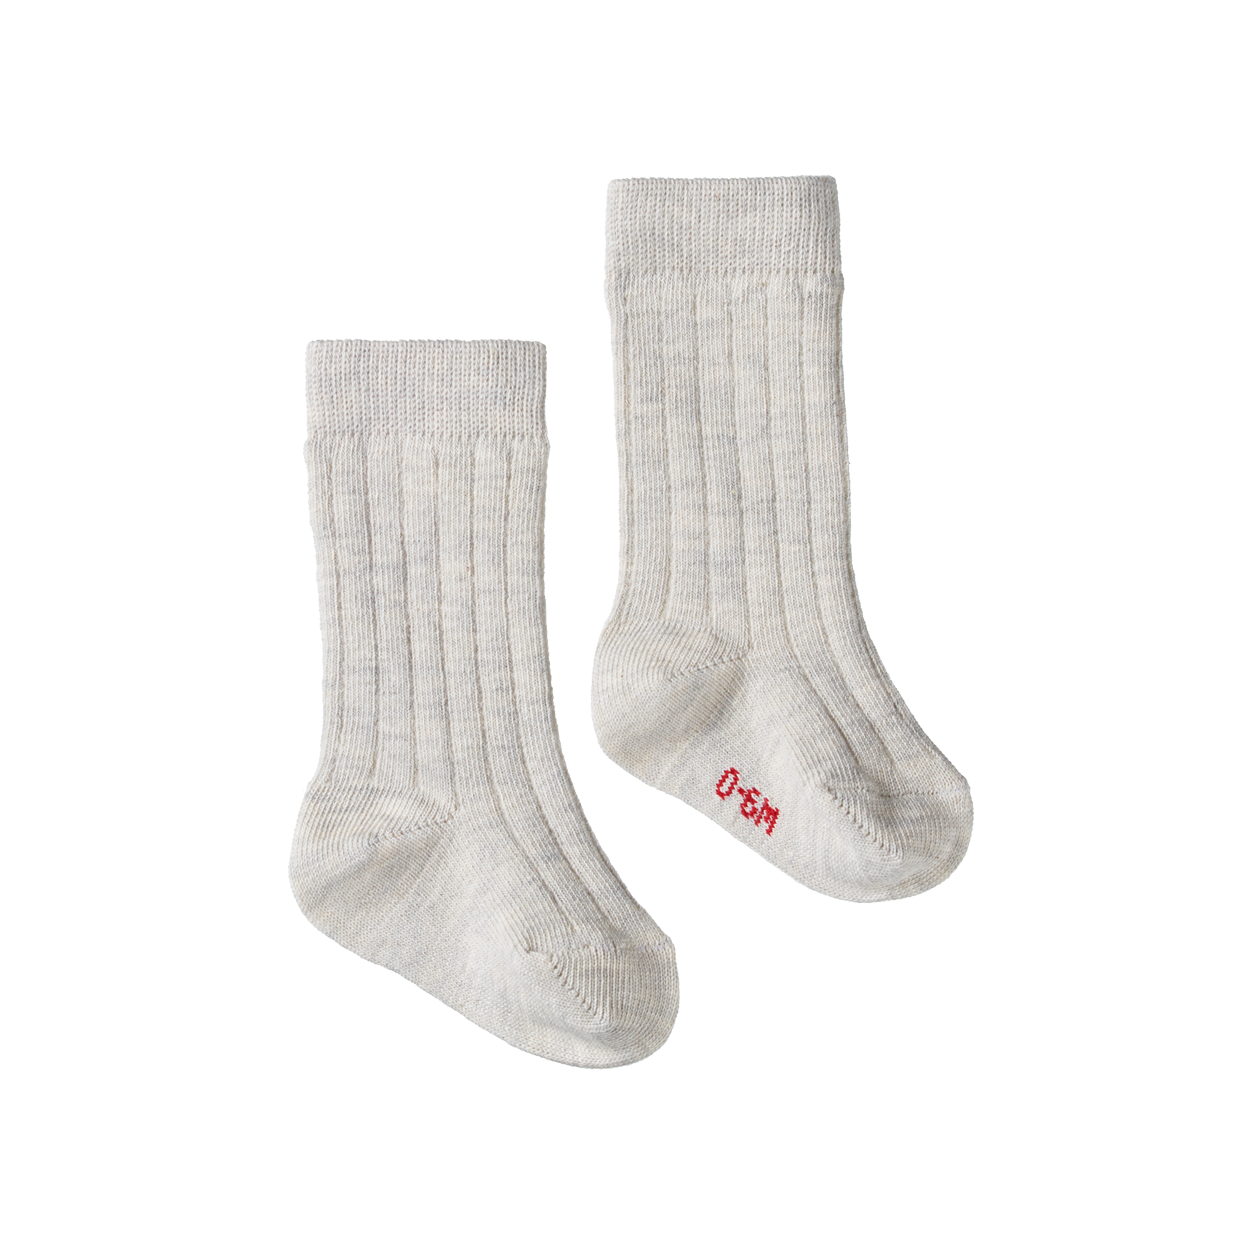 Organic Cotton Rib Socks - Light Grey